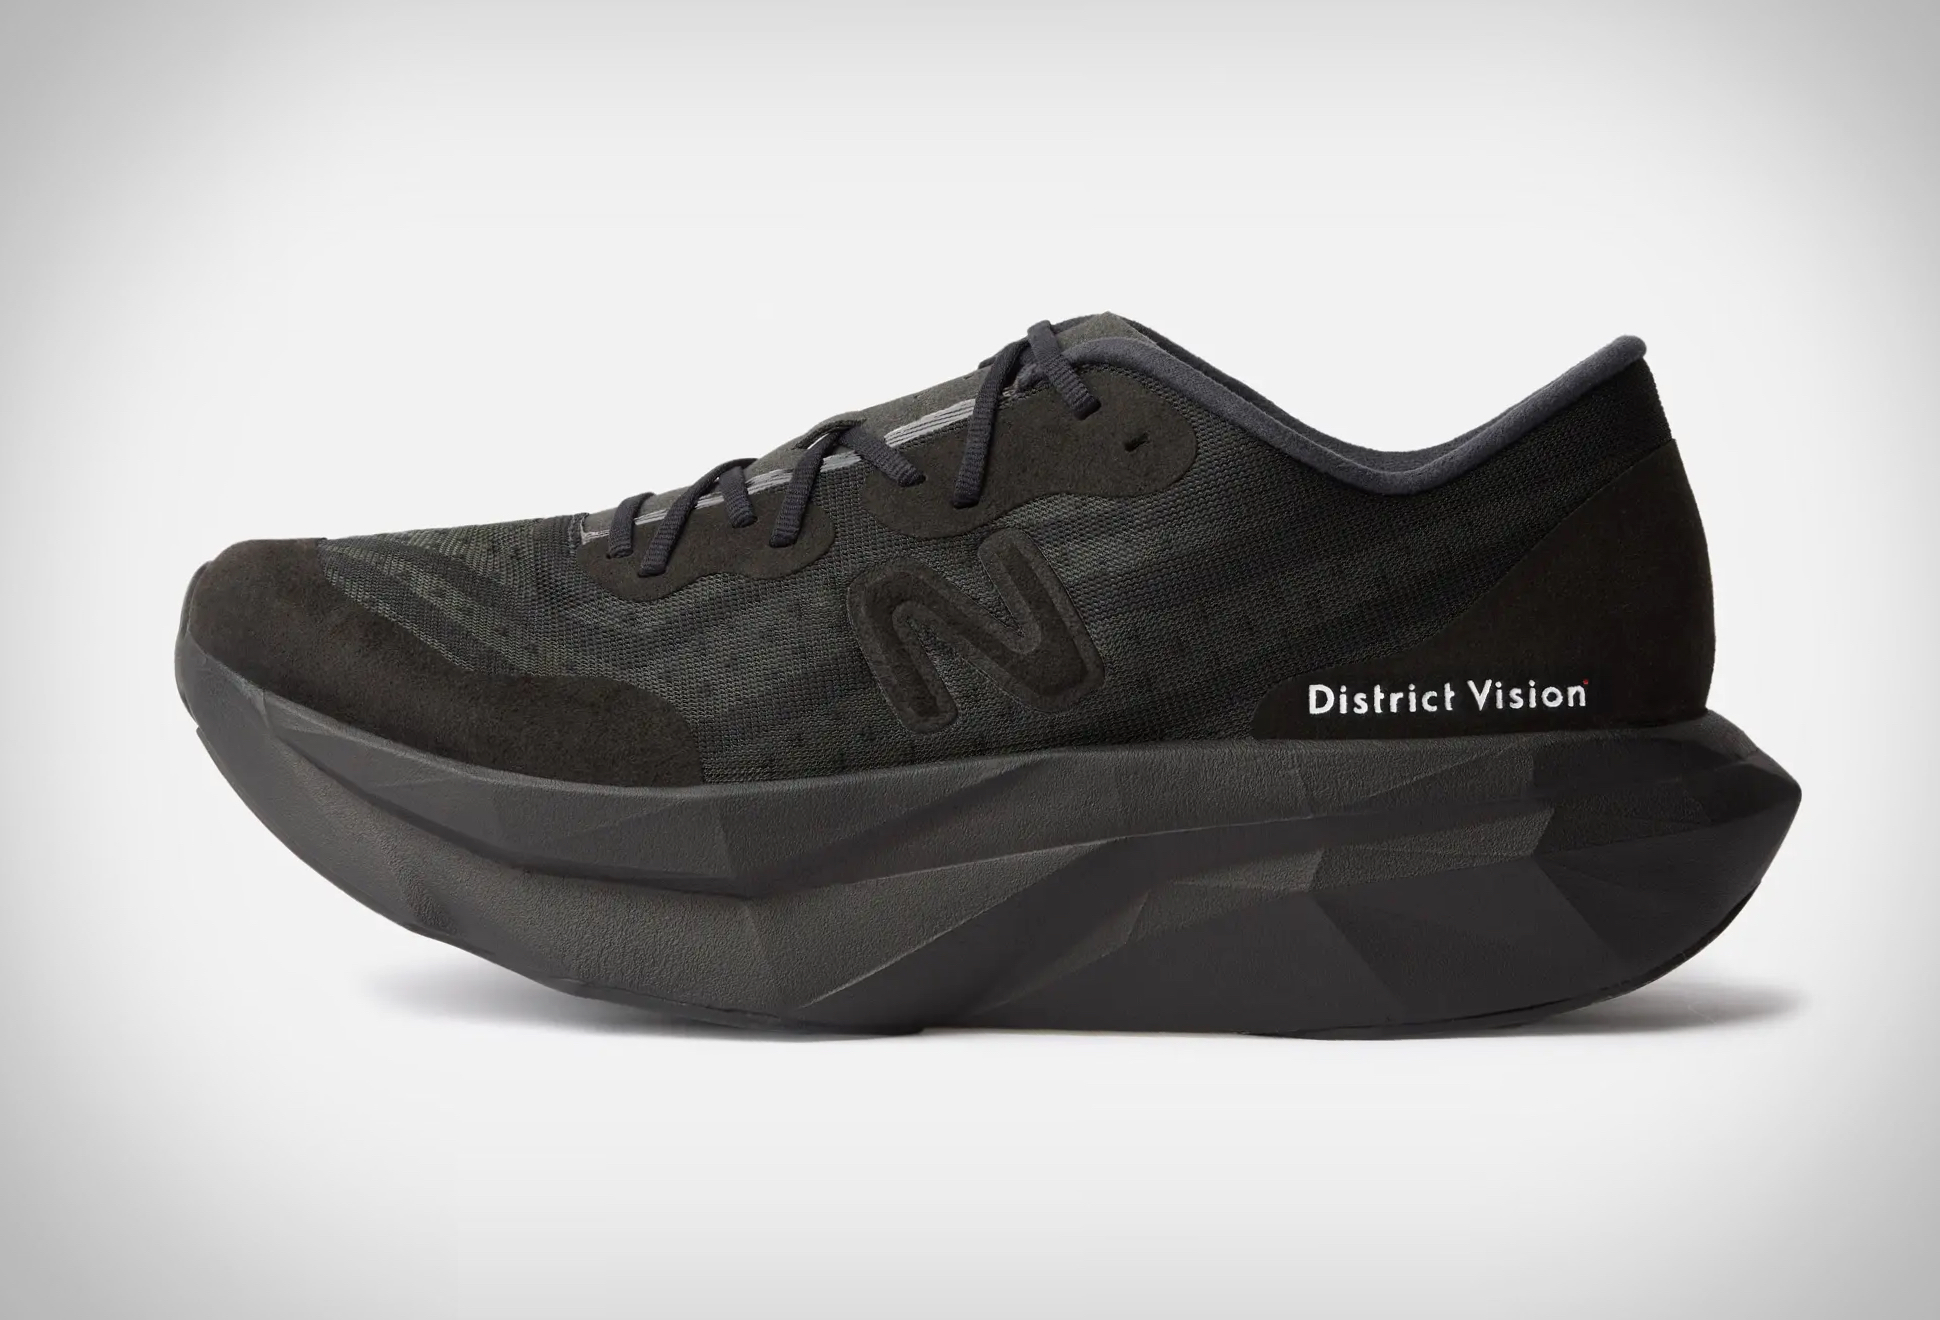 District Vision x New Balance Elite Race Shoe | Image